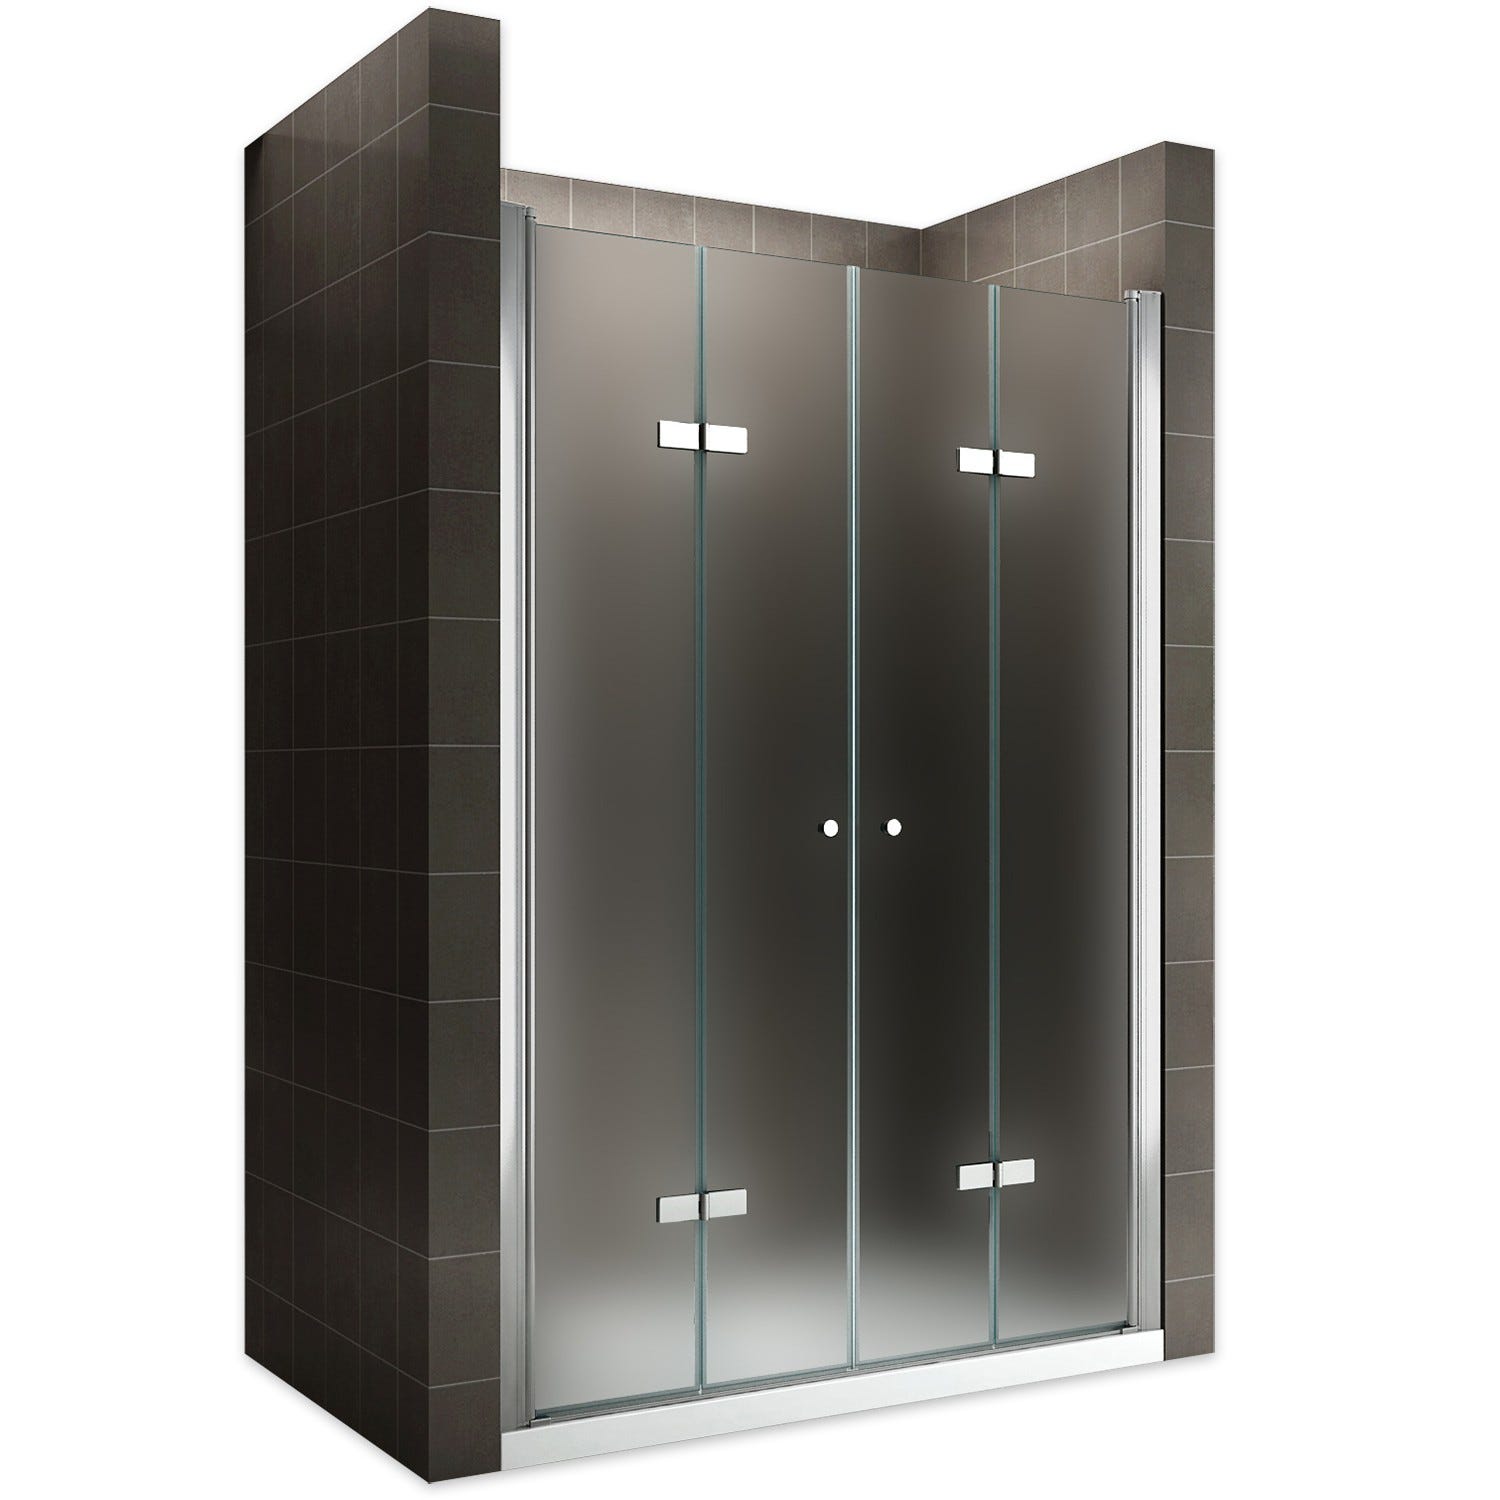 EMMY Porte de douche pliante pivotante H 185 cm largeur réglable 88 à 92 cm verre opaque 0